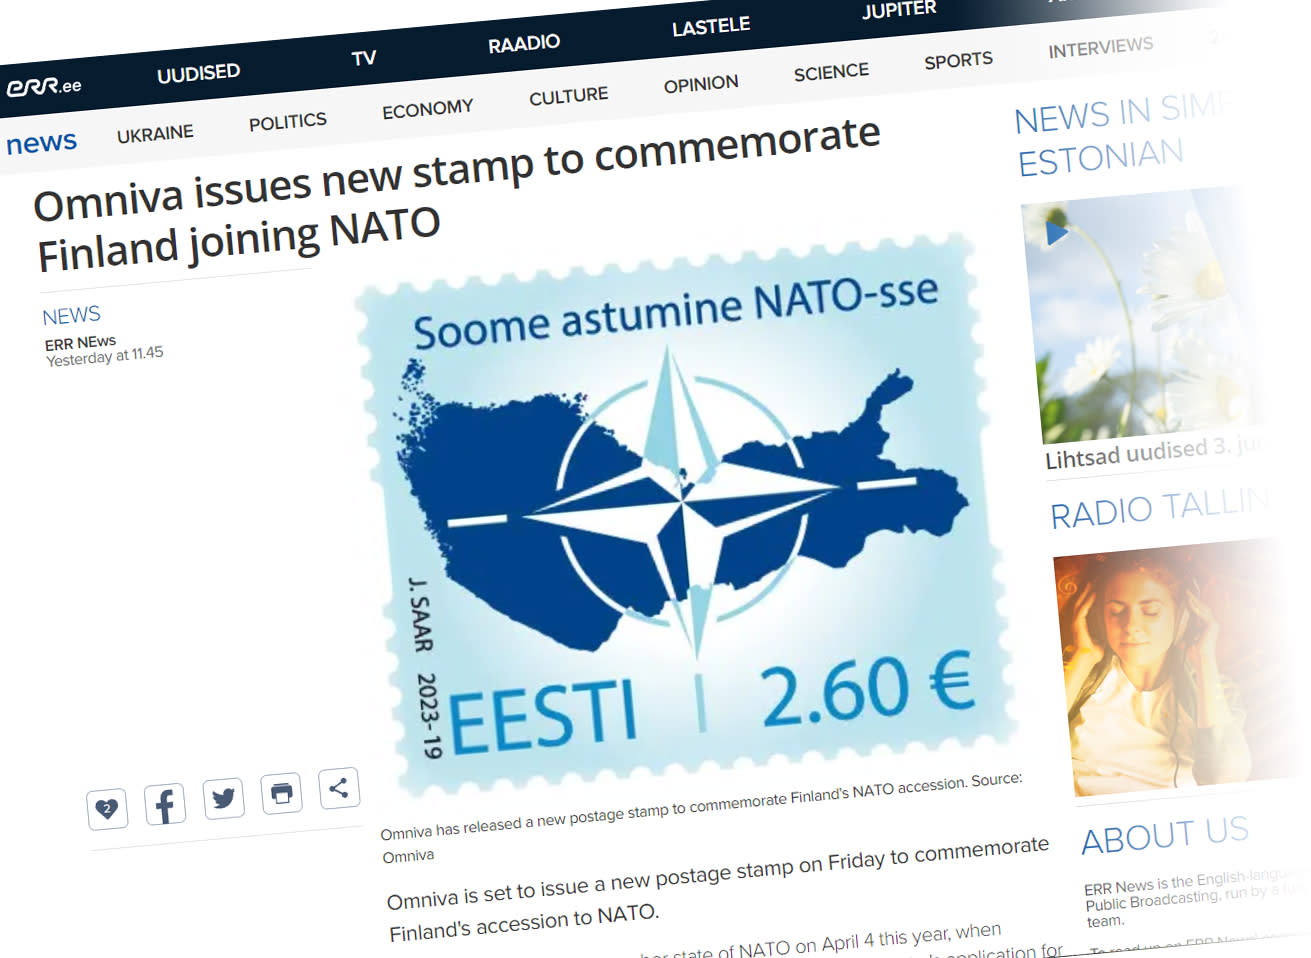 Estonia mengeluarkan setem sebagai penghormatan kepada keahlian NATO Finland